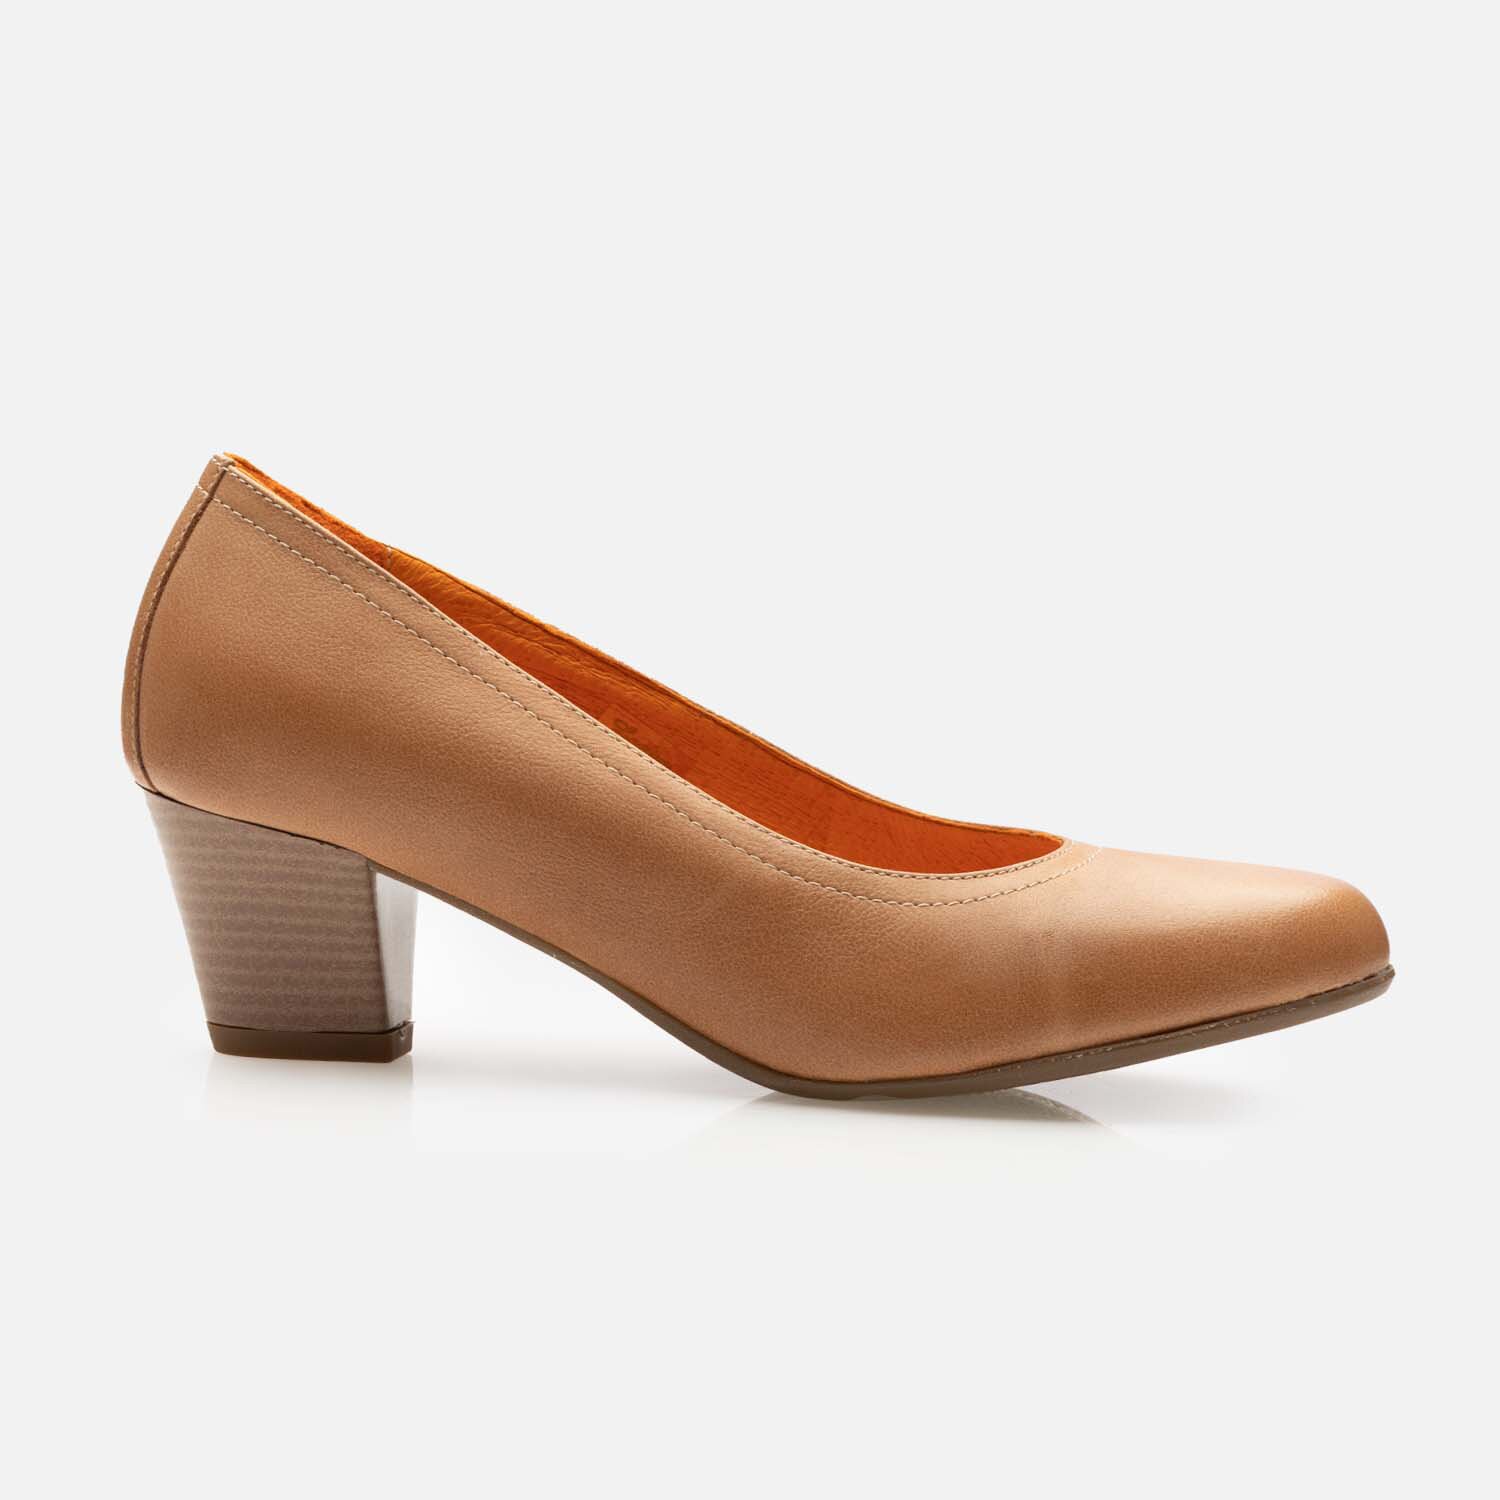 Pantofi casual cu toc dama din piele naturala - 022 bej box